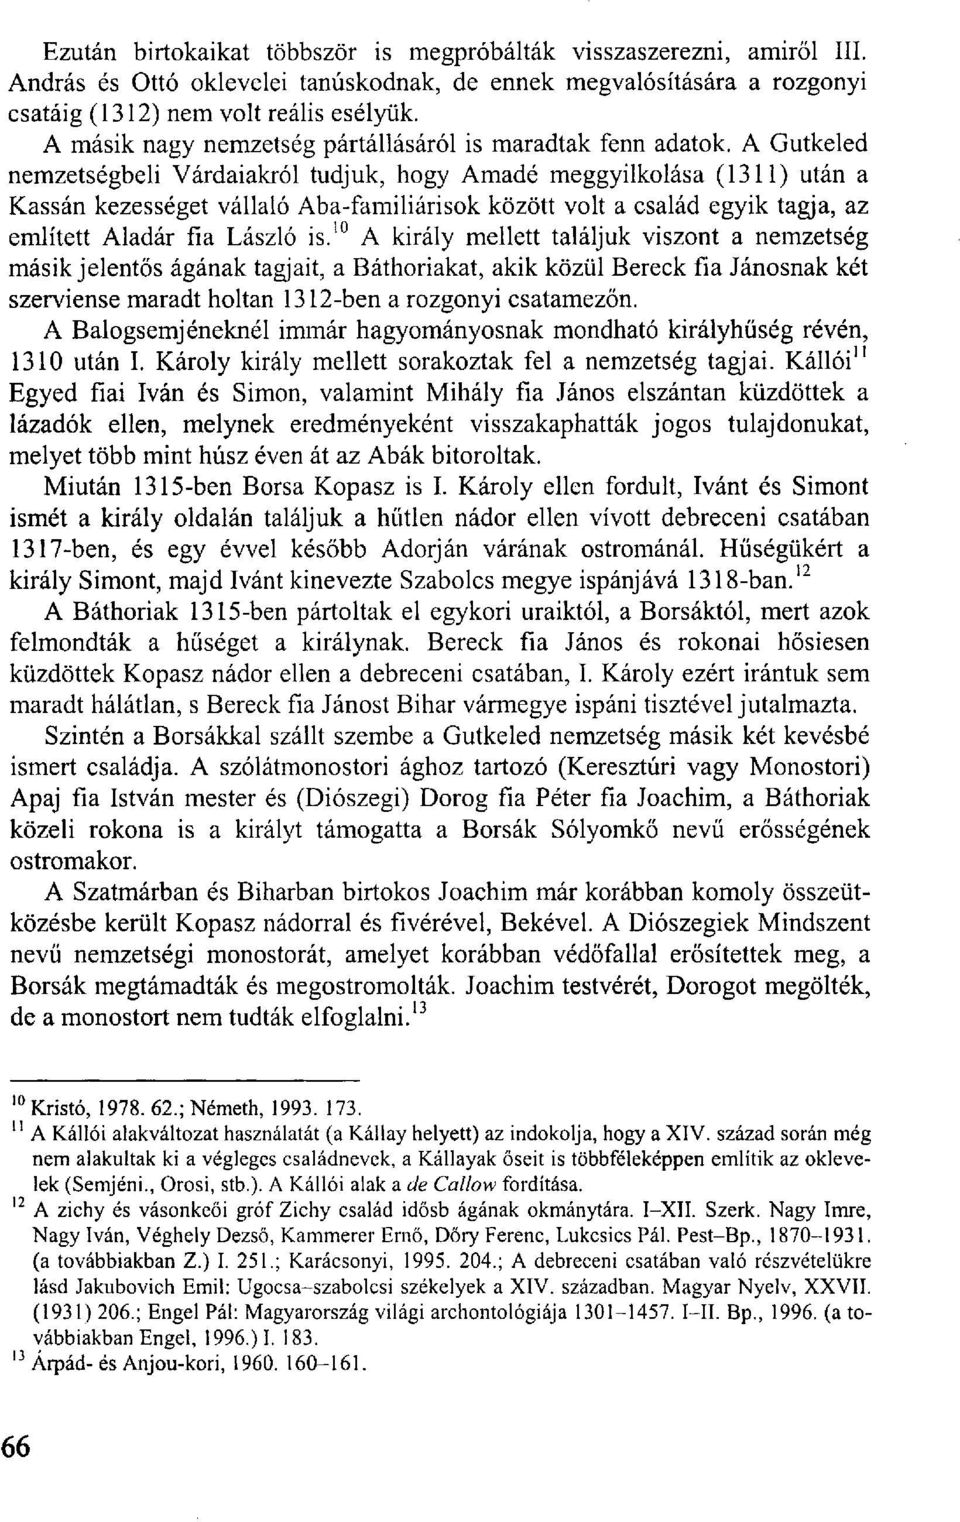 A Gutkeled nemzetségbeli Várdaiakról tudjuk, hogy Amadé meggyilkolása (1311) után a Kassán kezességet vállaló Aba-familiárisok között volt a család egyik tagja, az említett Aladár fia László is.